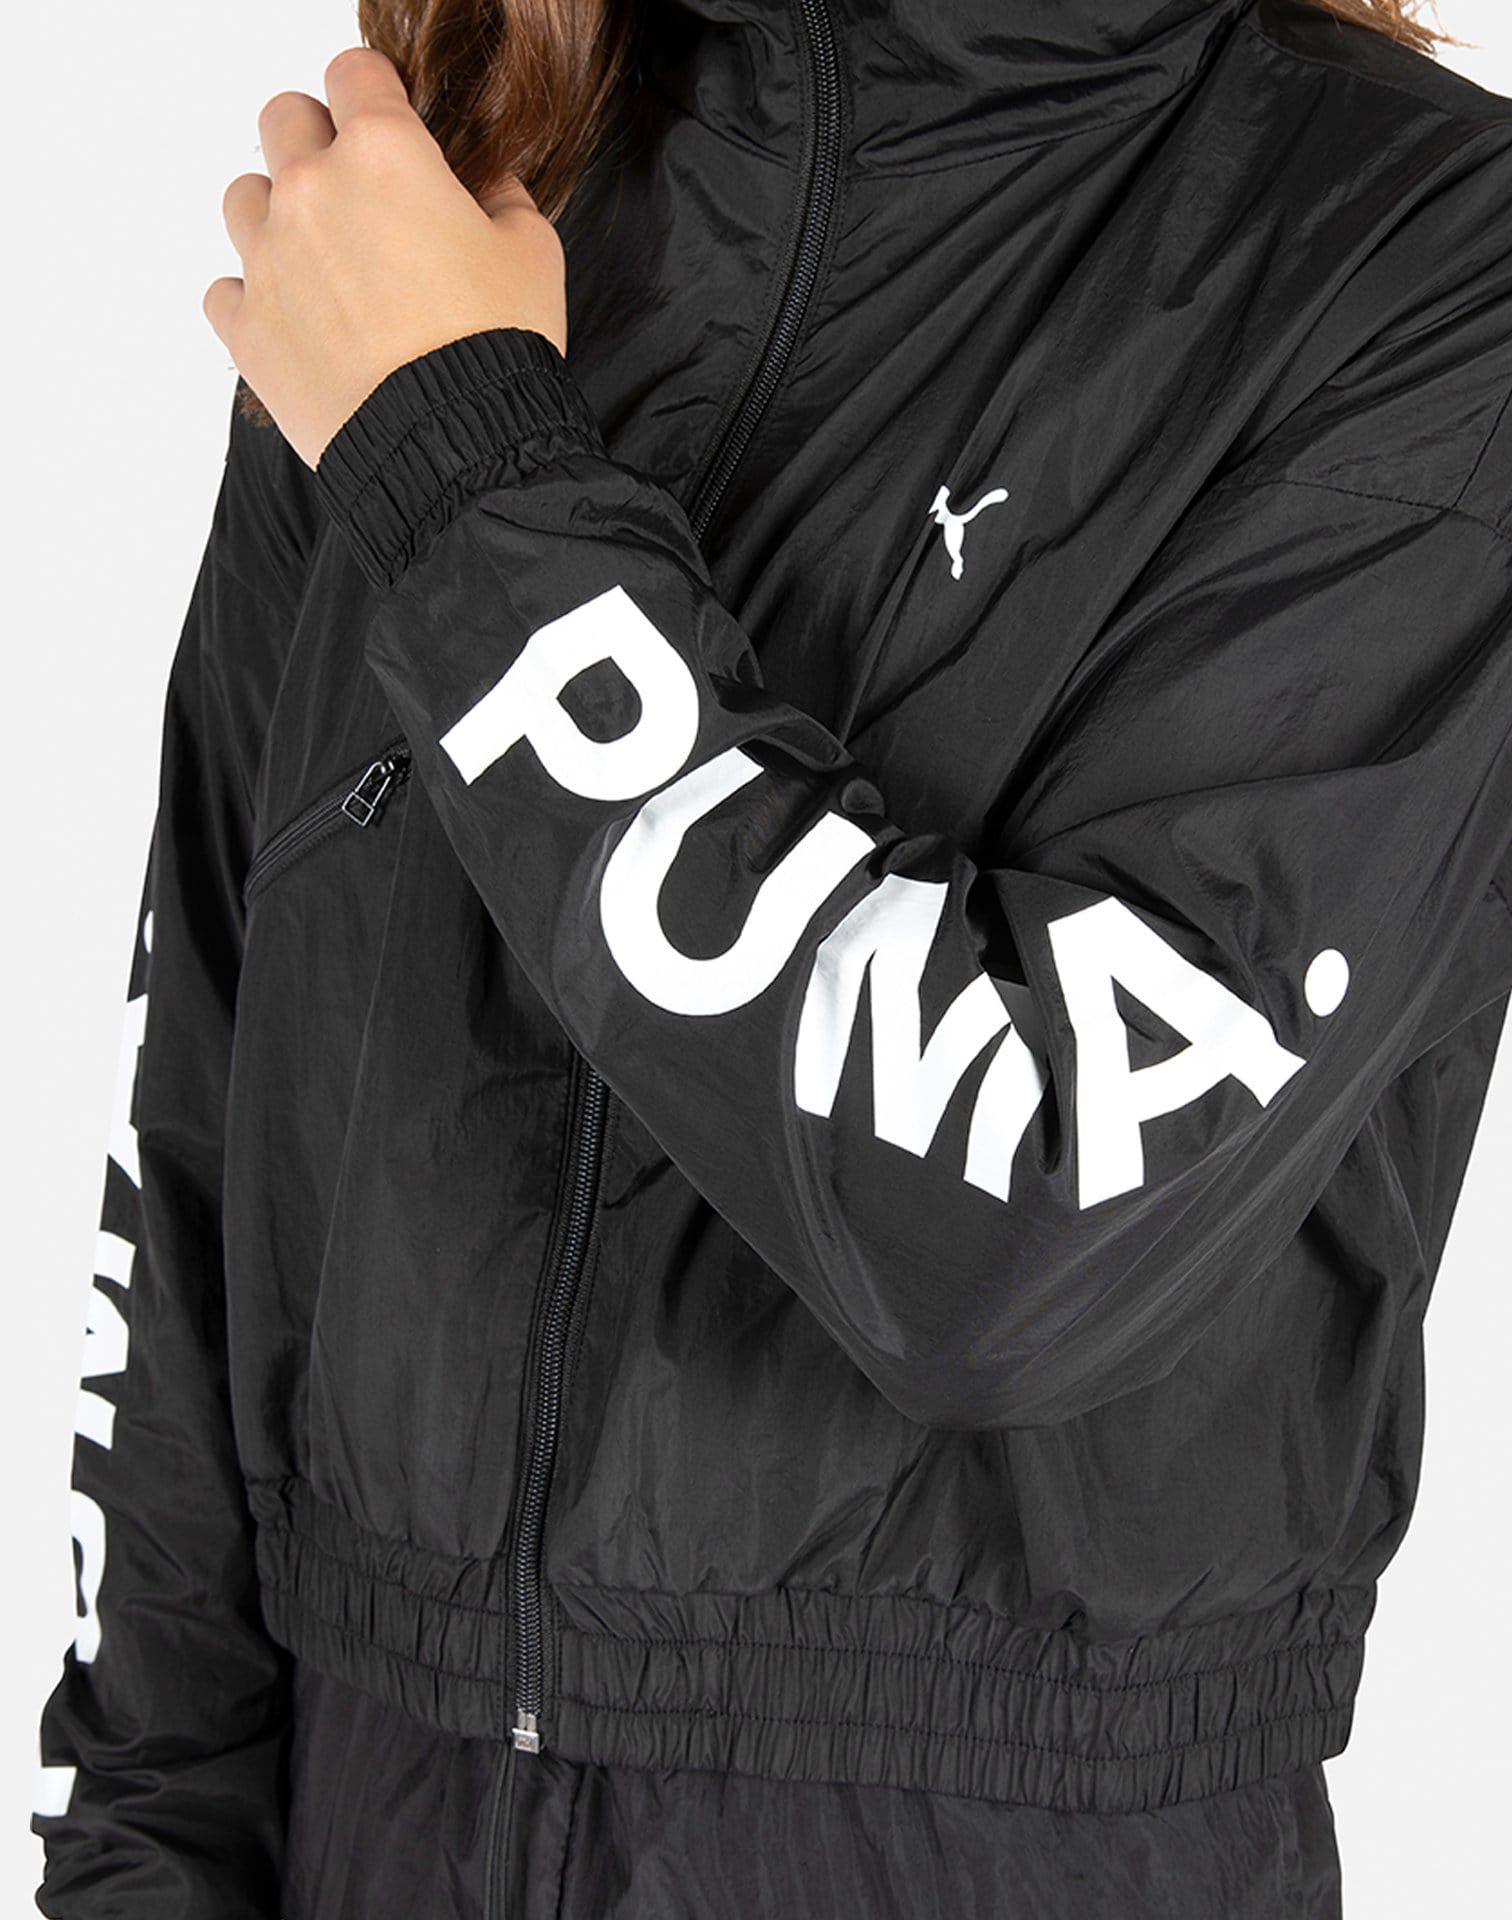 PUMA Women's Chase Woven Jacket